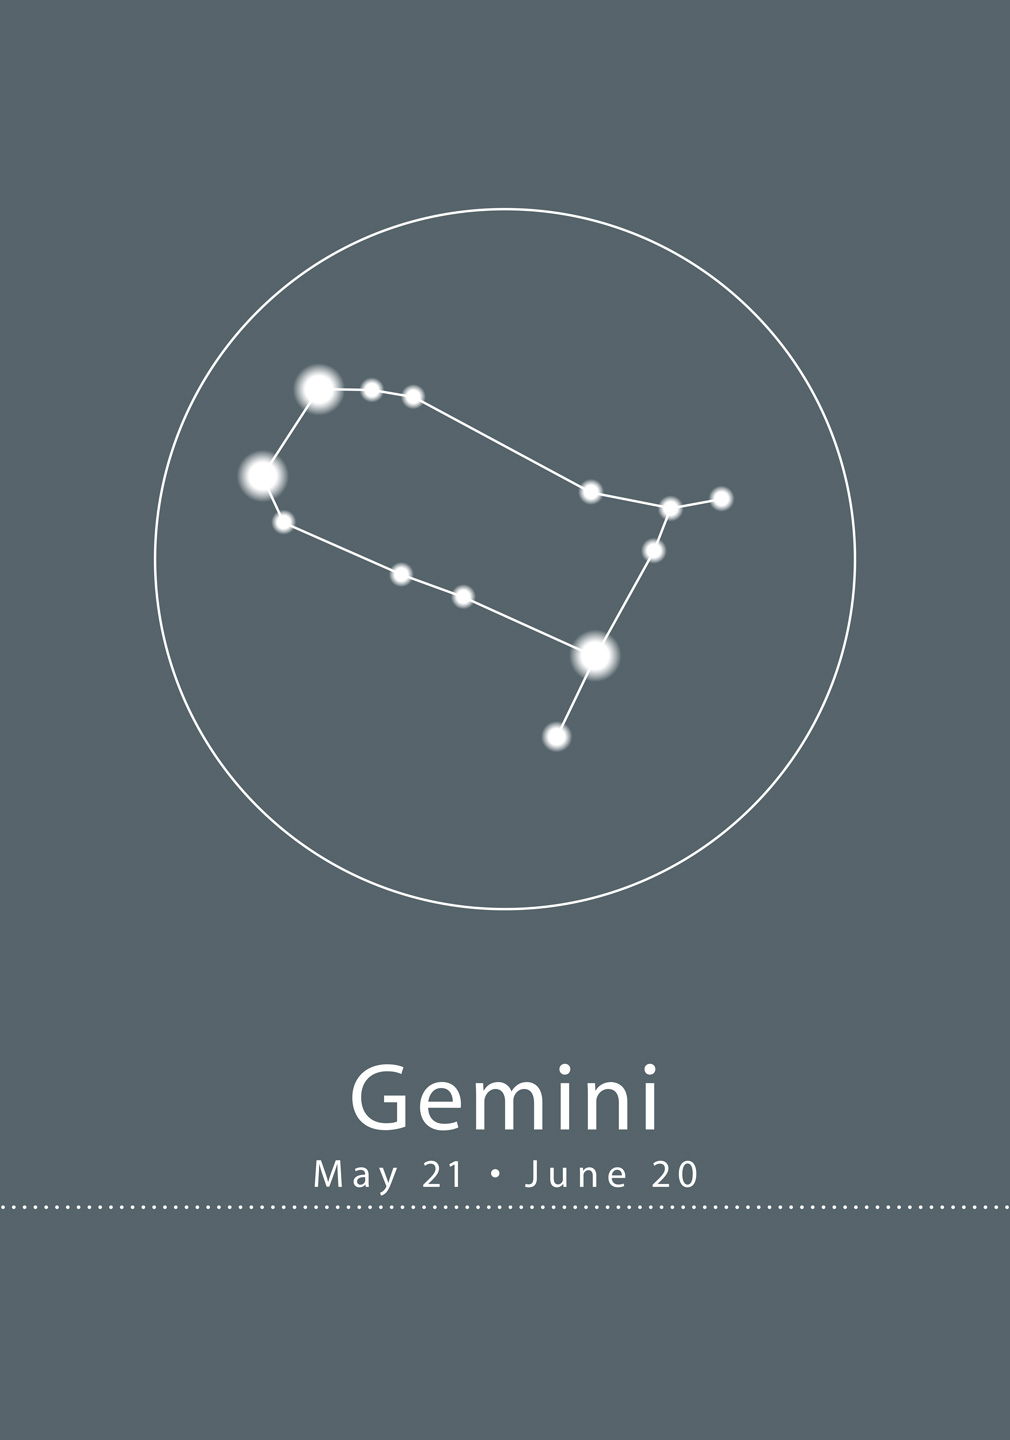 Se Stjernetegn - Gemini af Ten Valleys hos Illux.dk